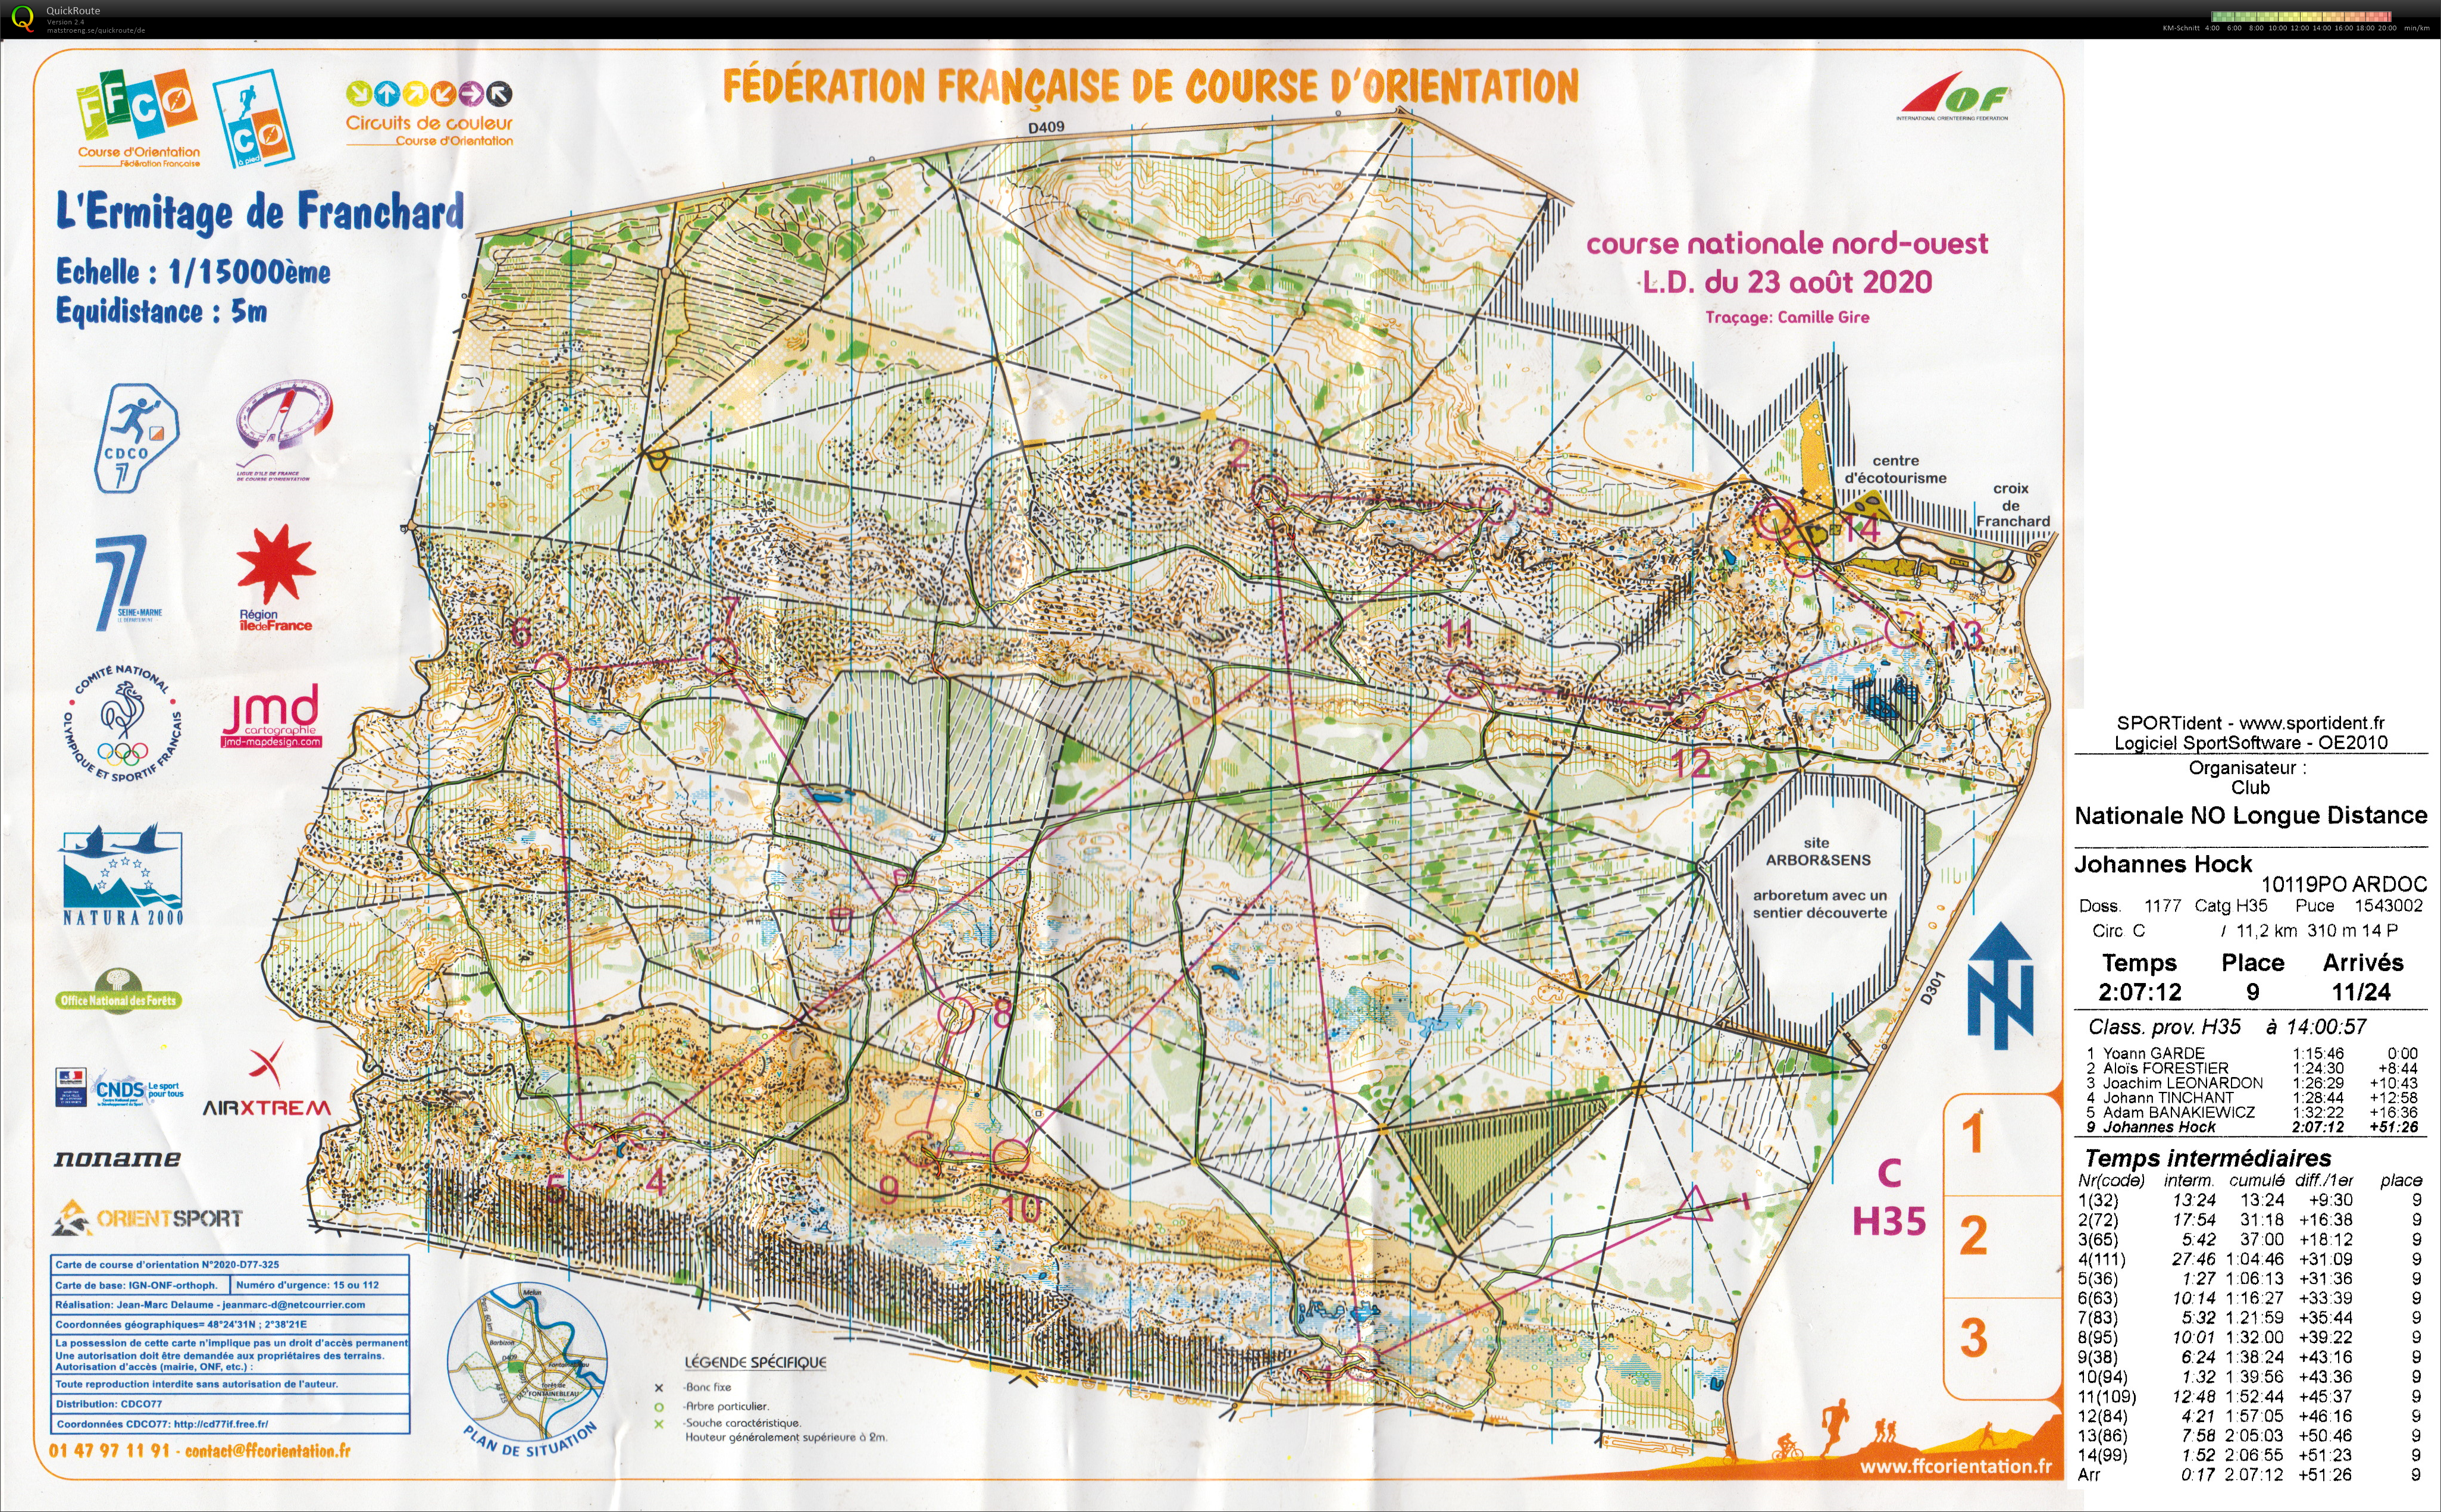 Course nationale L.D. Fontainebleau (2020-08-23)